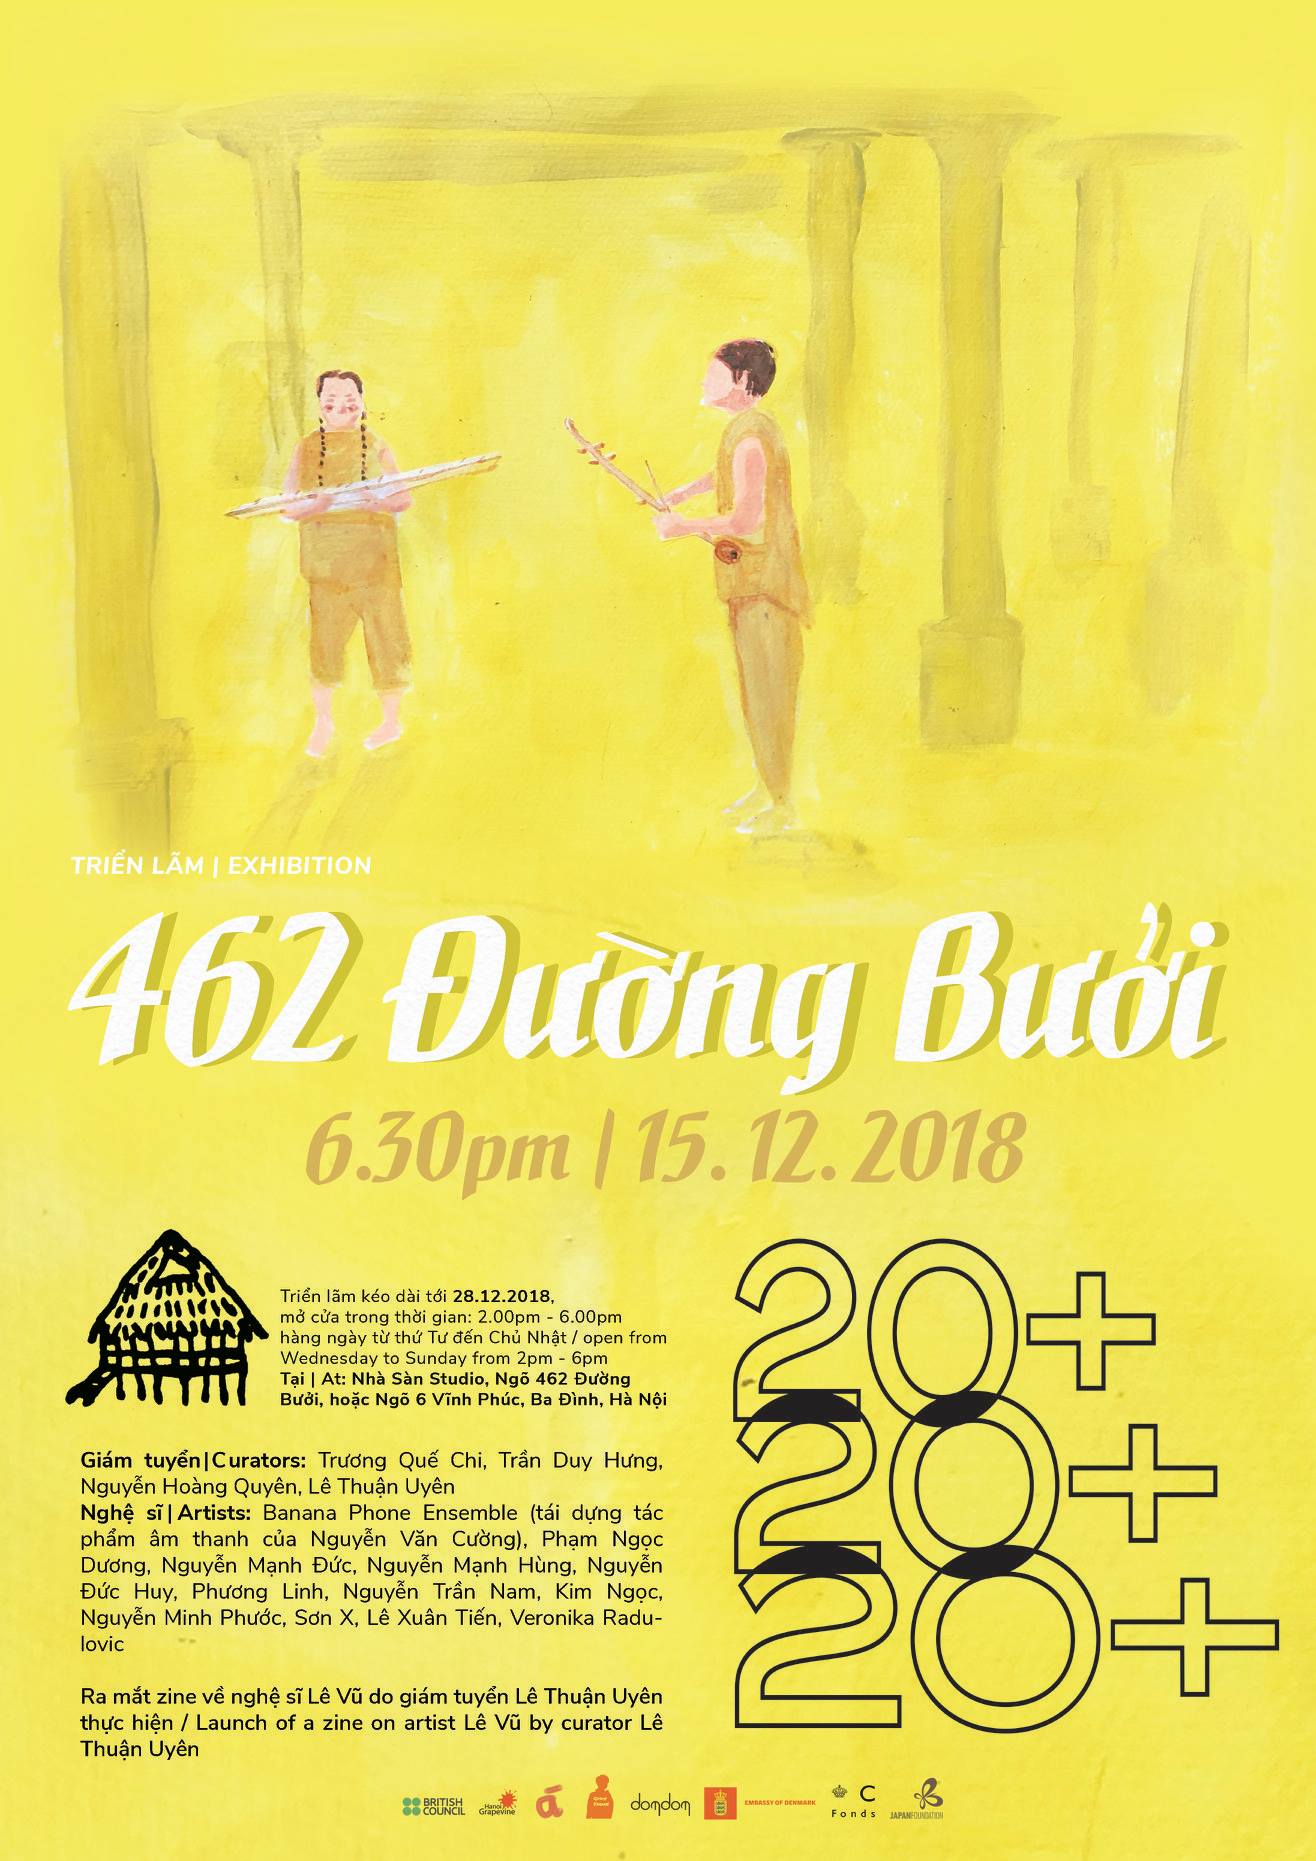 ​Exhibition 462 ĐƯỜNG BƯỞI